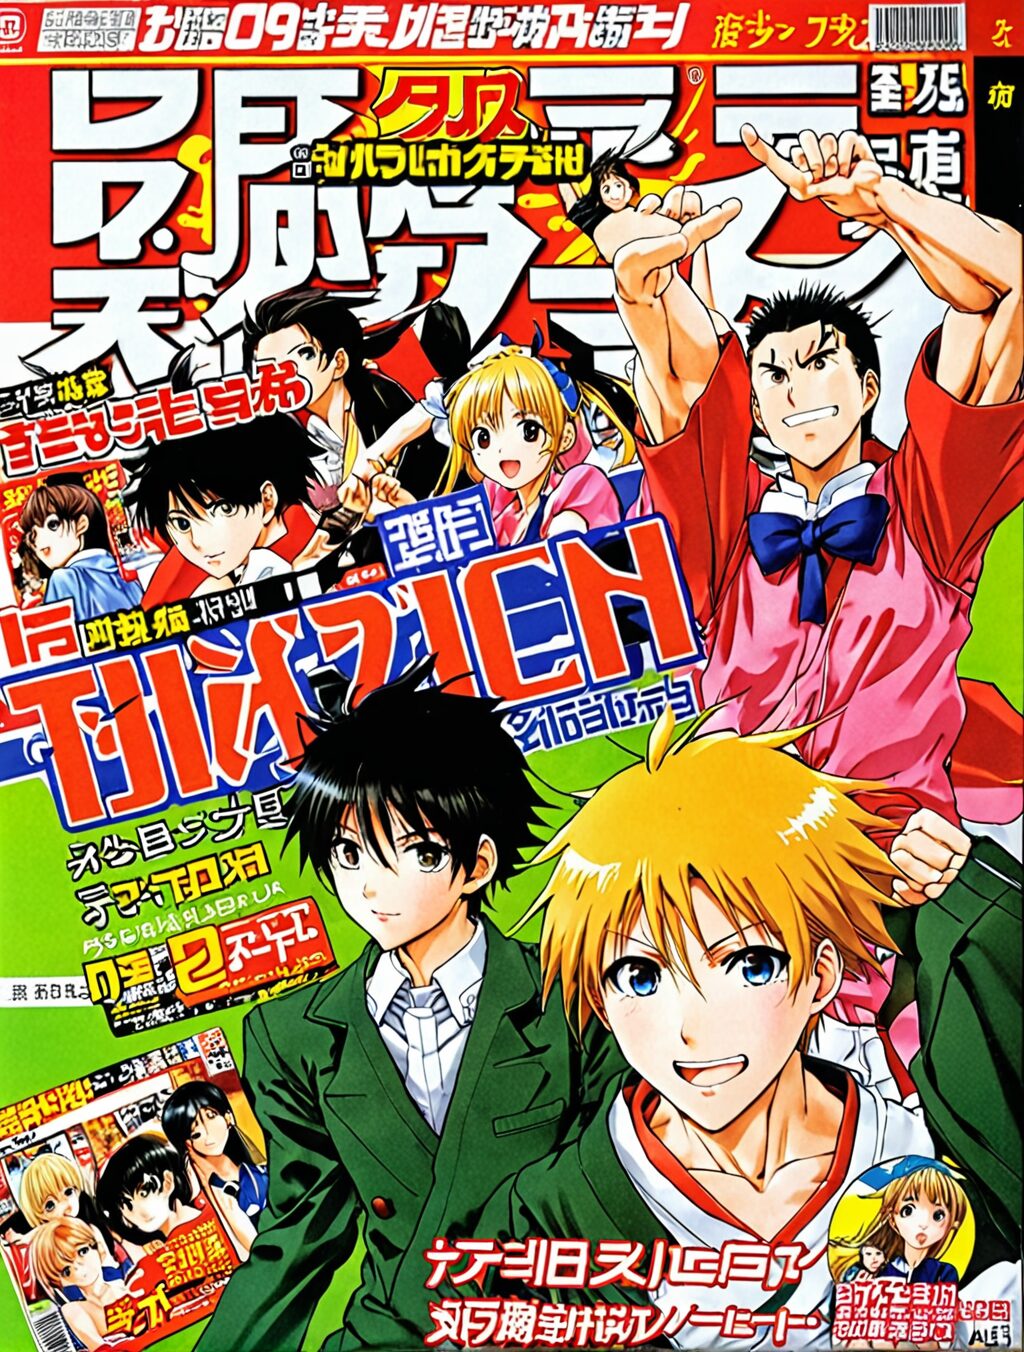 where to buy manga magazines in japan